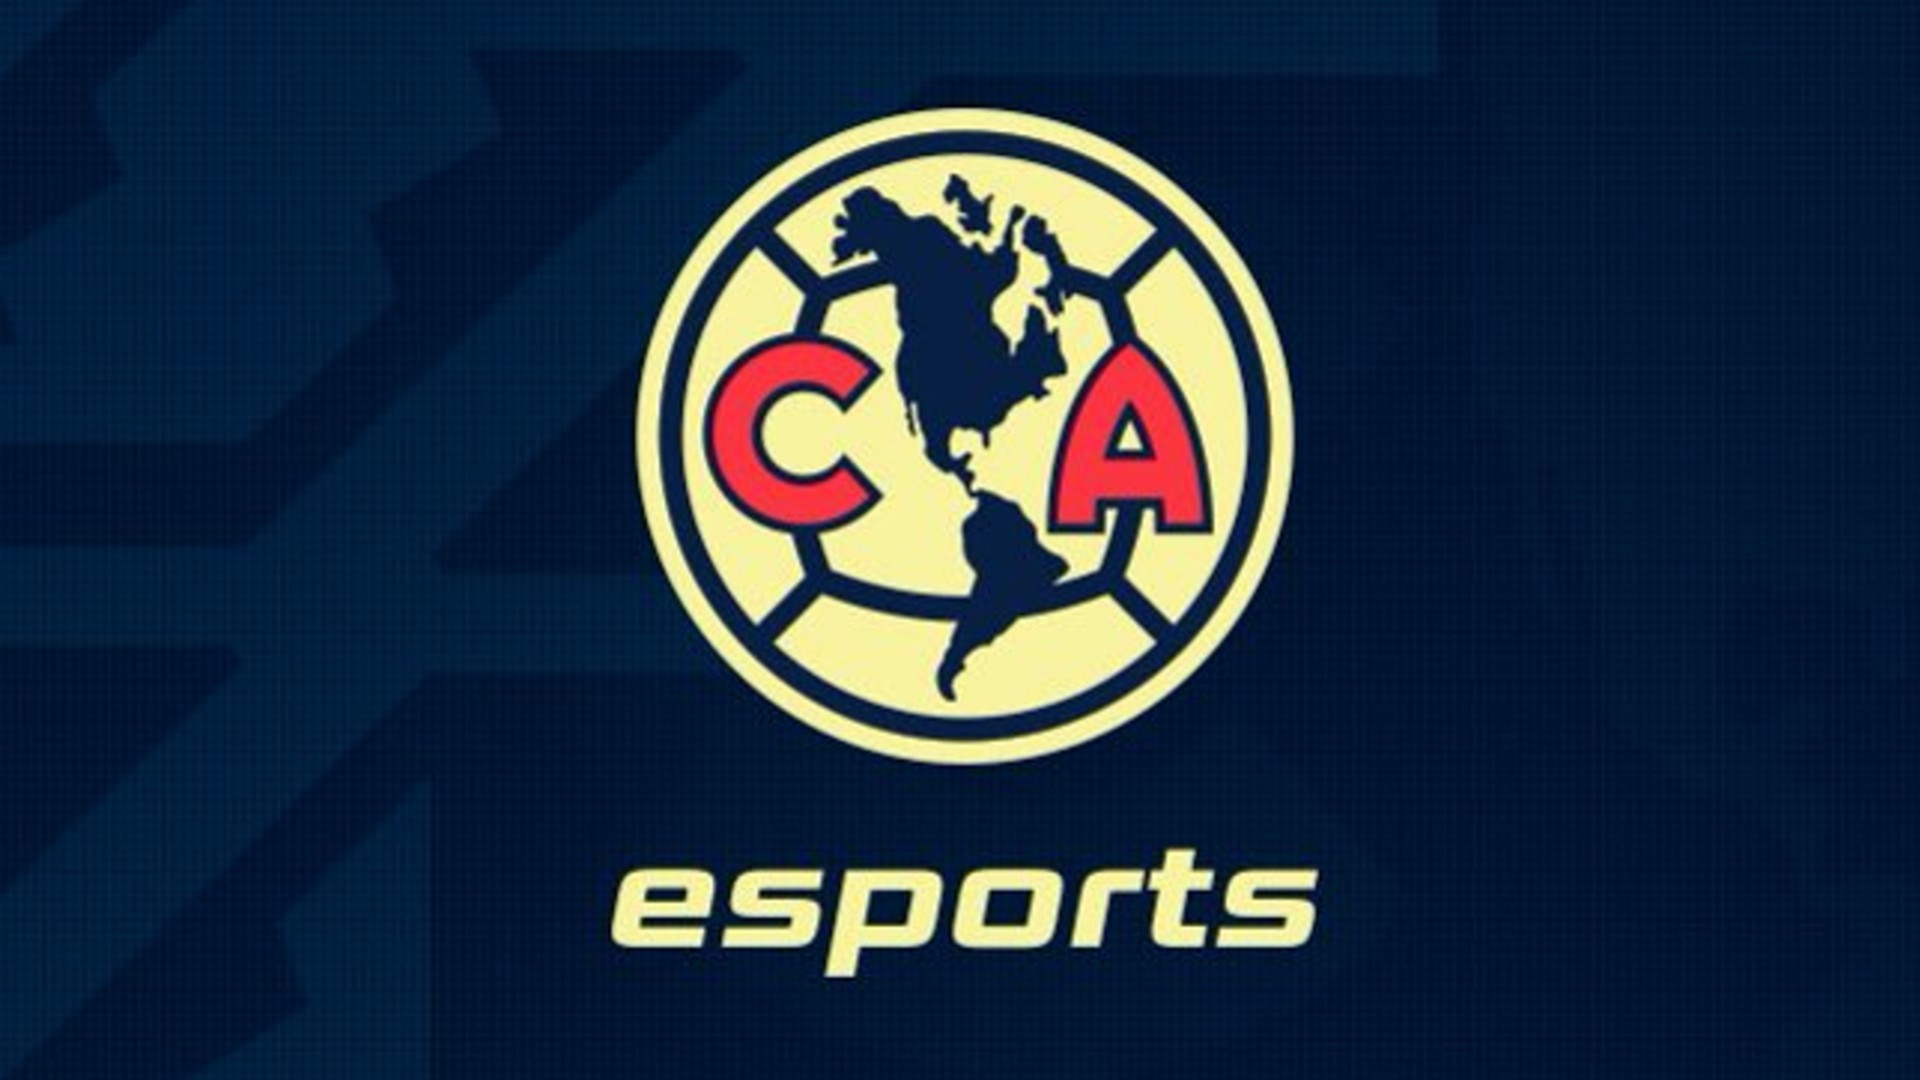 El Club América le entra a los eSports